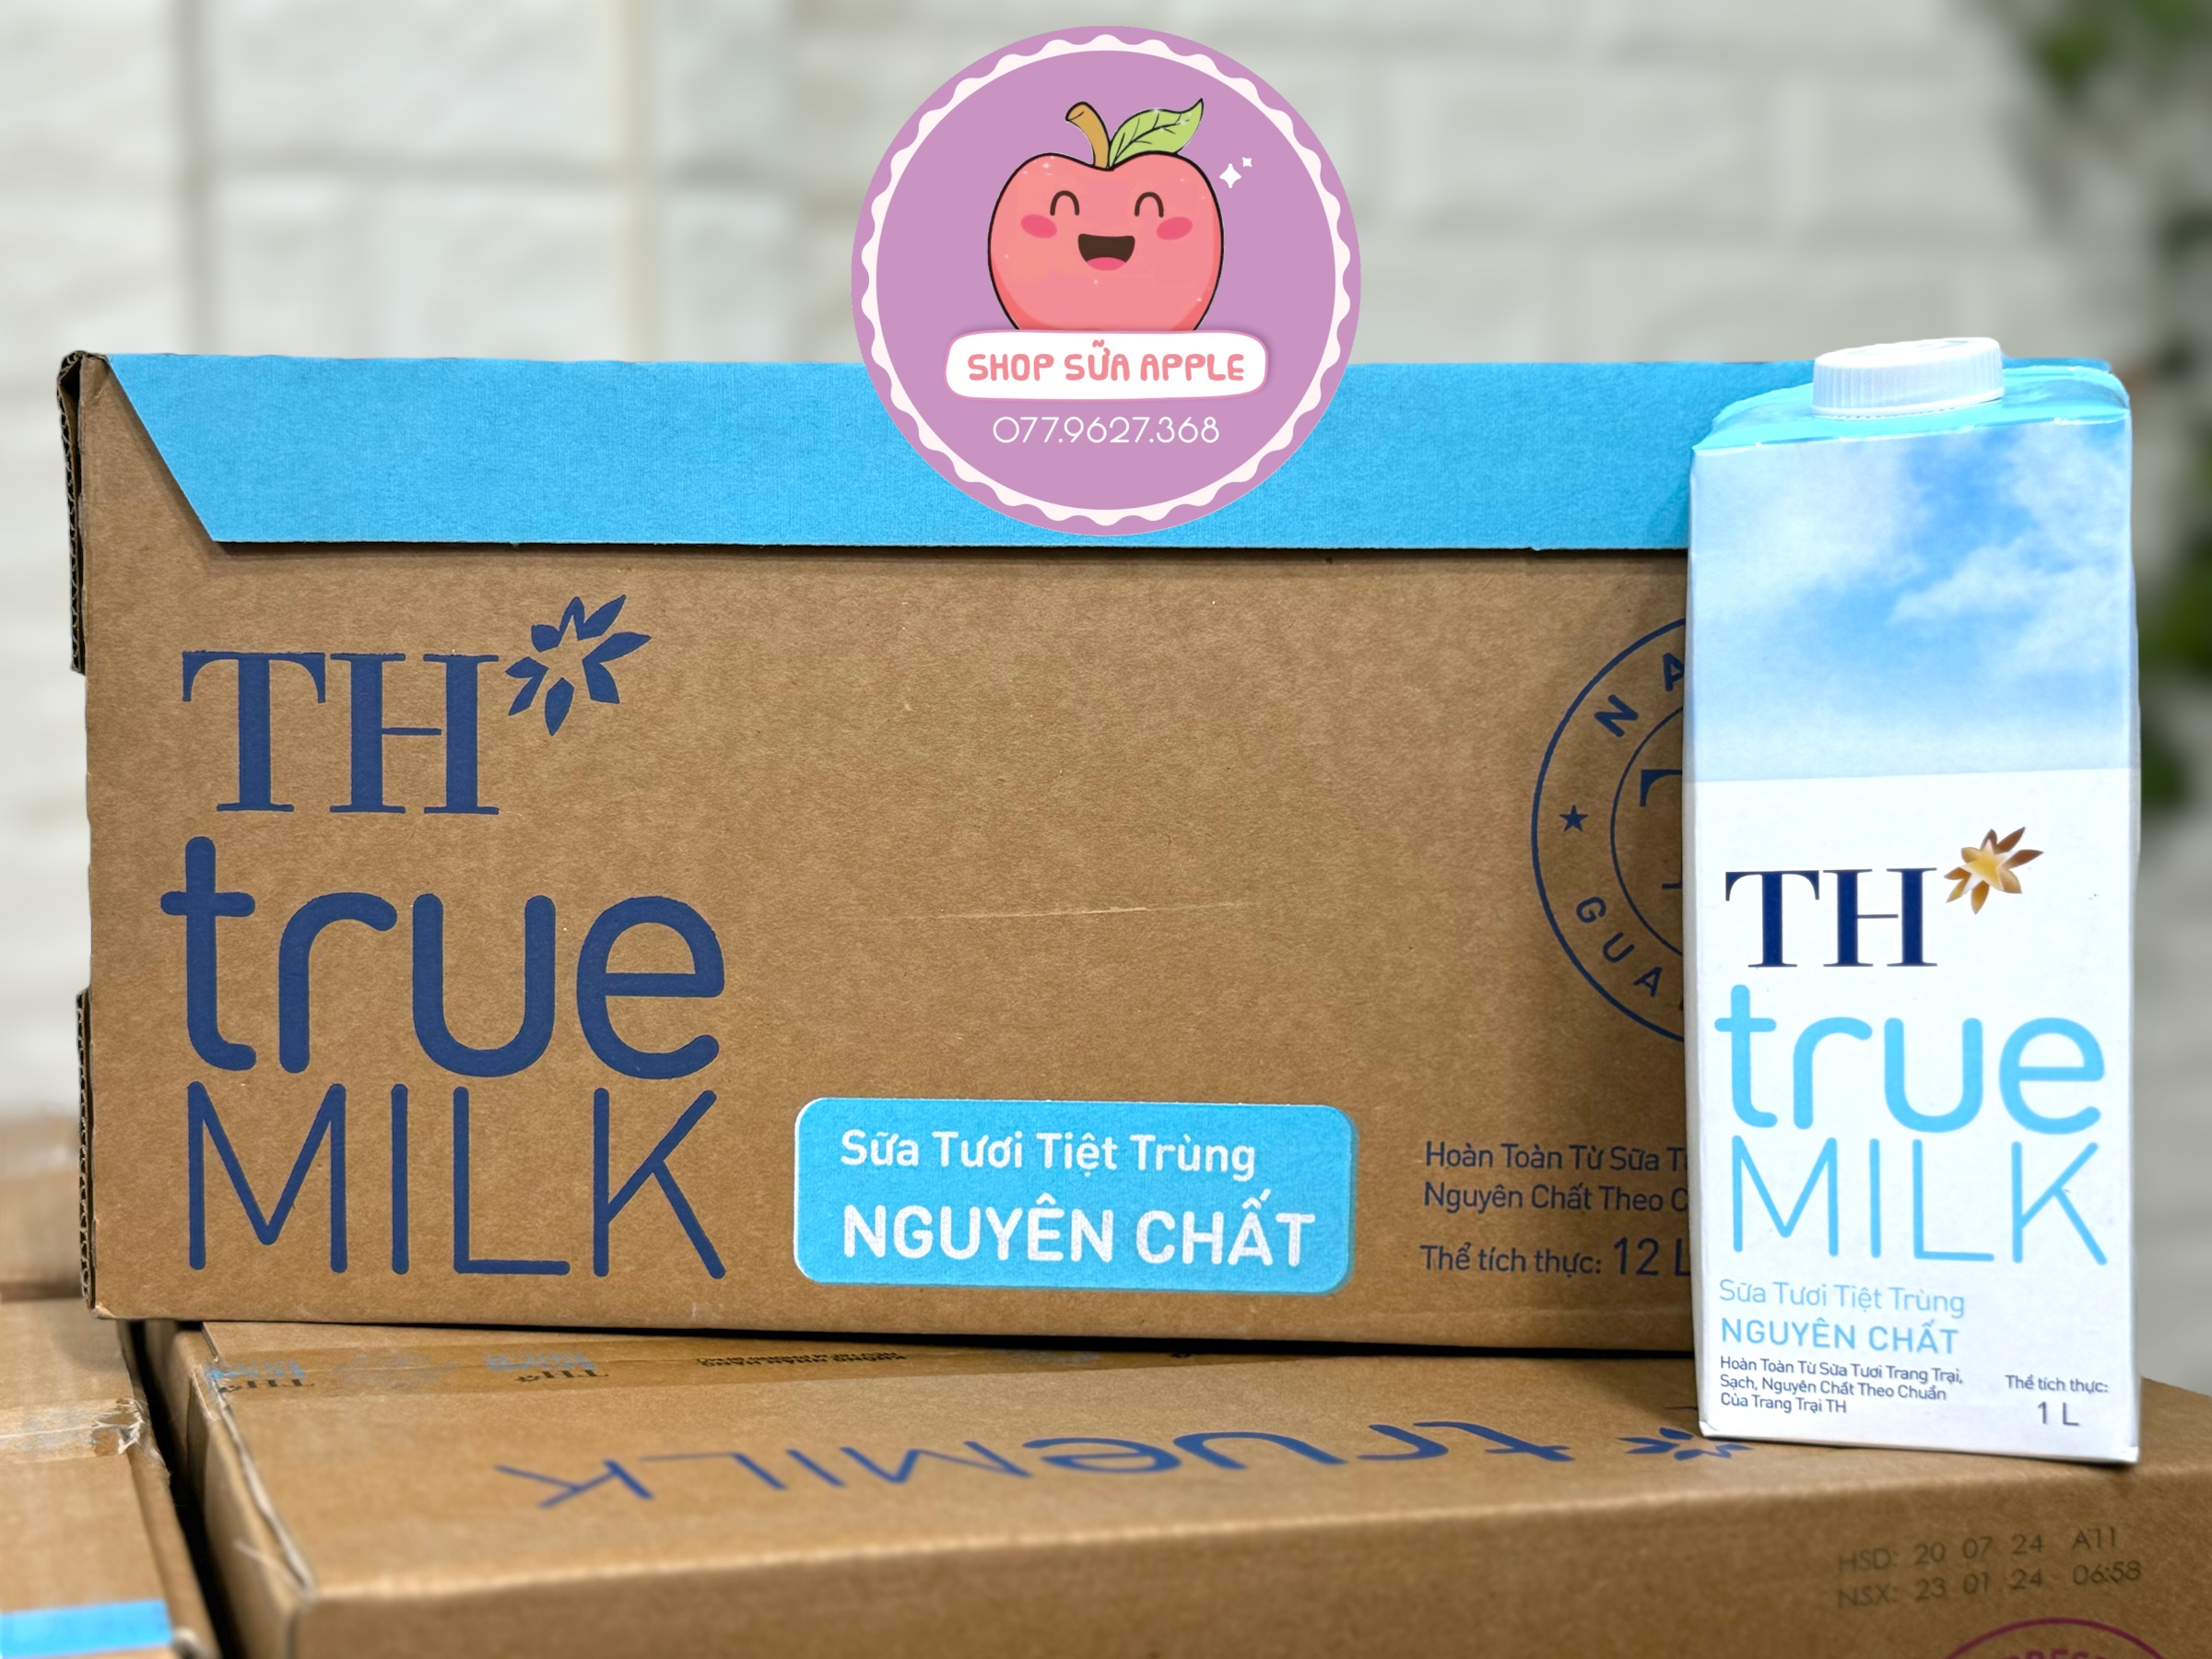 Thùng 12 hộp sữa tươi Th true milk nguyên chất hộp 1L